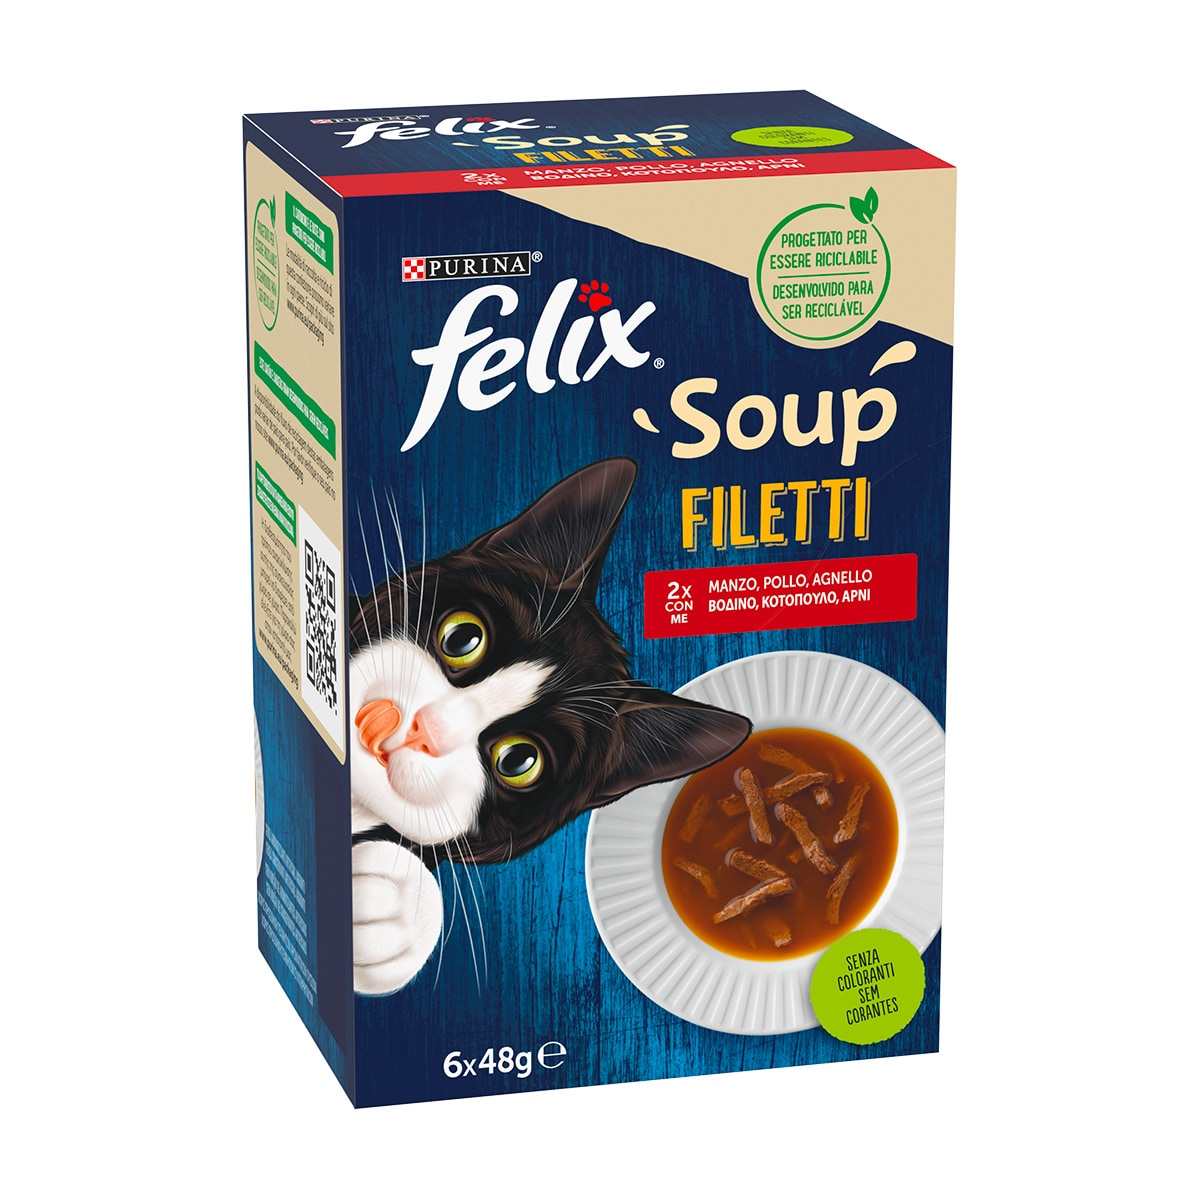 FELIX Soup Filetti Selezioni Deliziose 6x48g Manzo Pollo Agnello